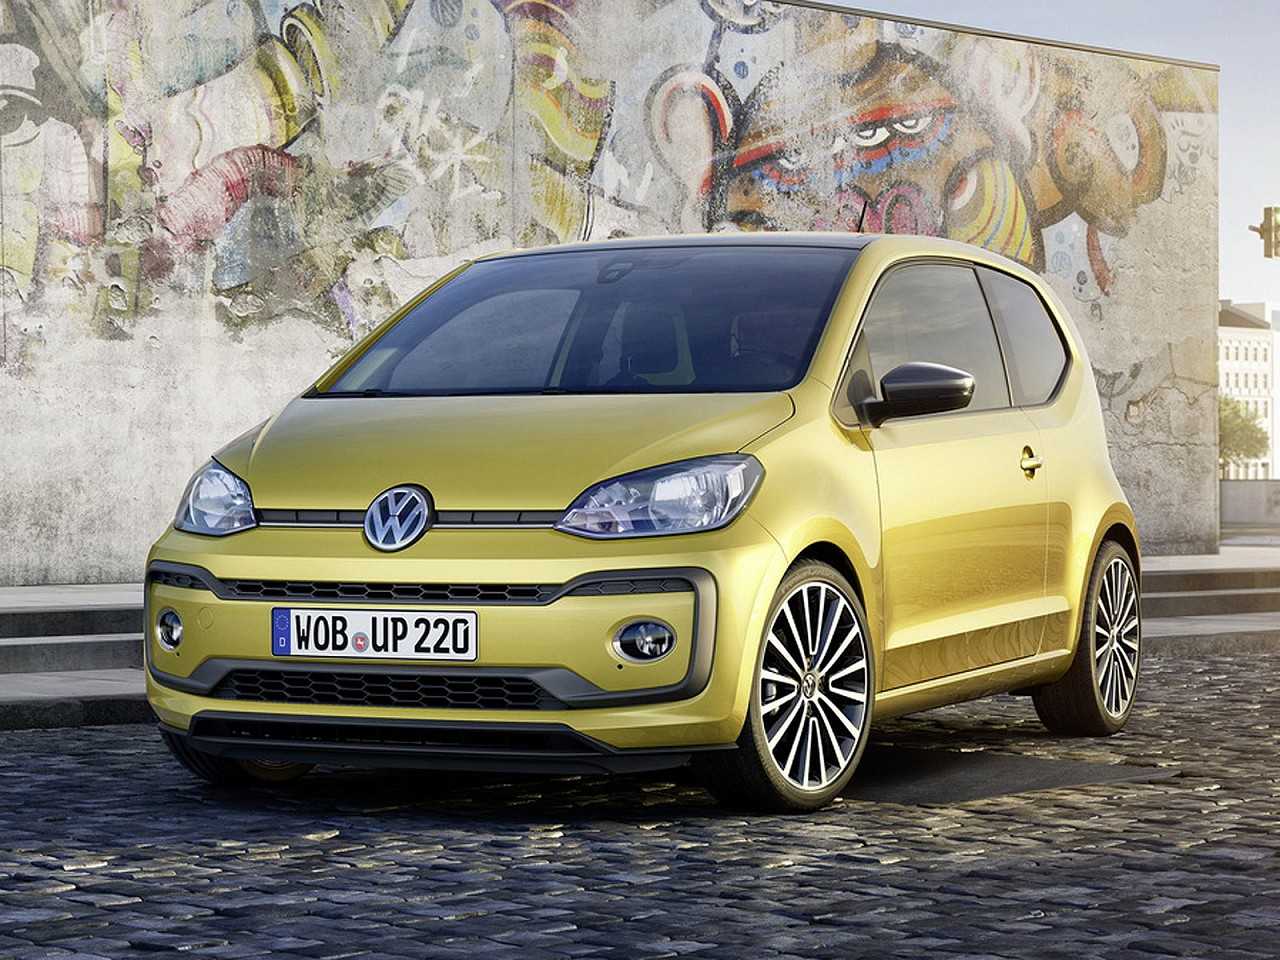 Discreto facelift do Volkswagen up! que estrou no comeo de 2016 na Europa